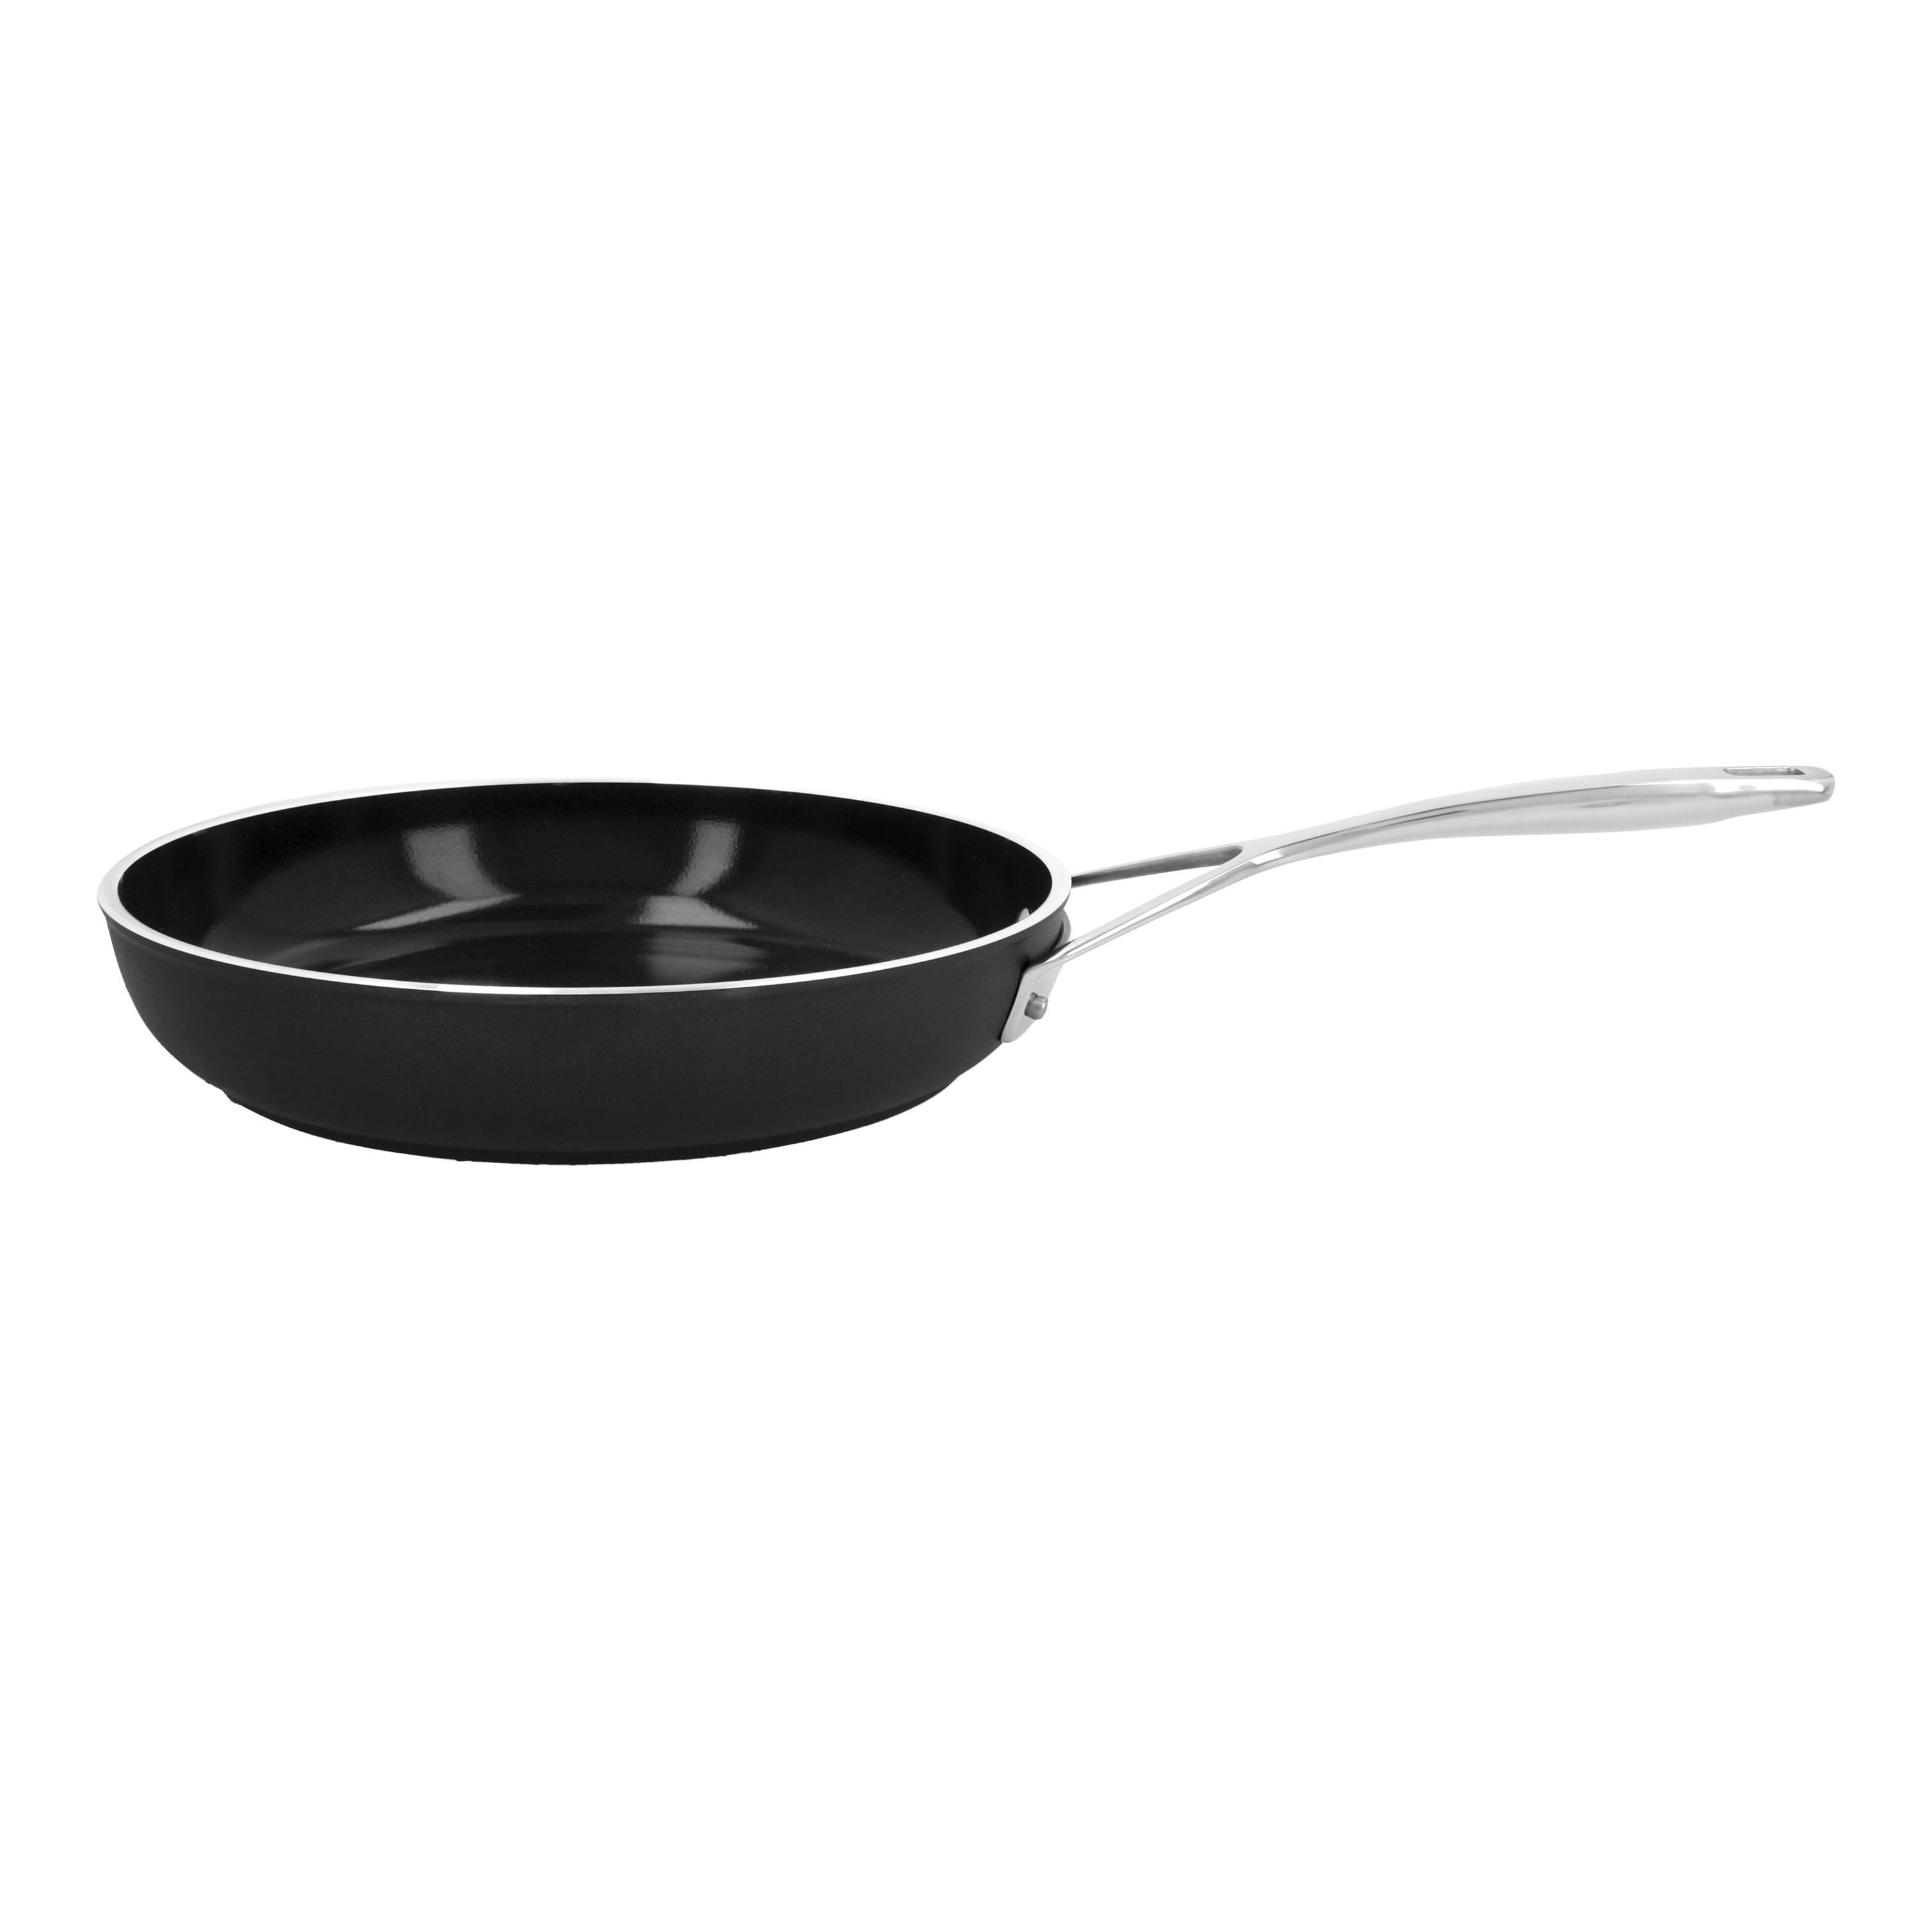 Buy Demeyere Alu Pro 5 Frying pan